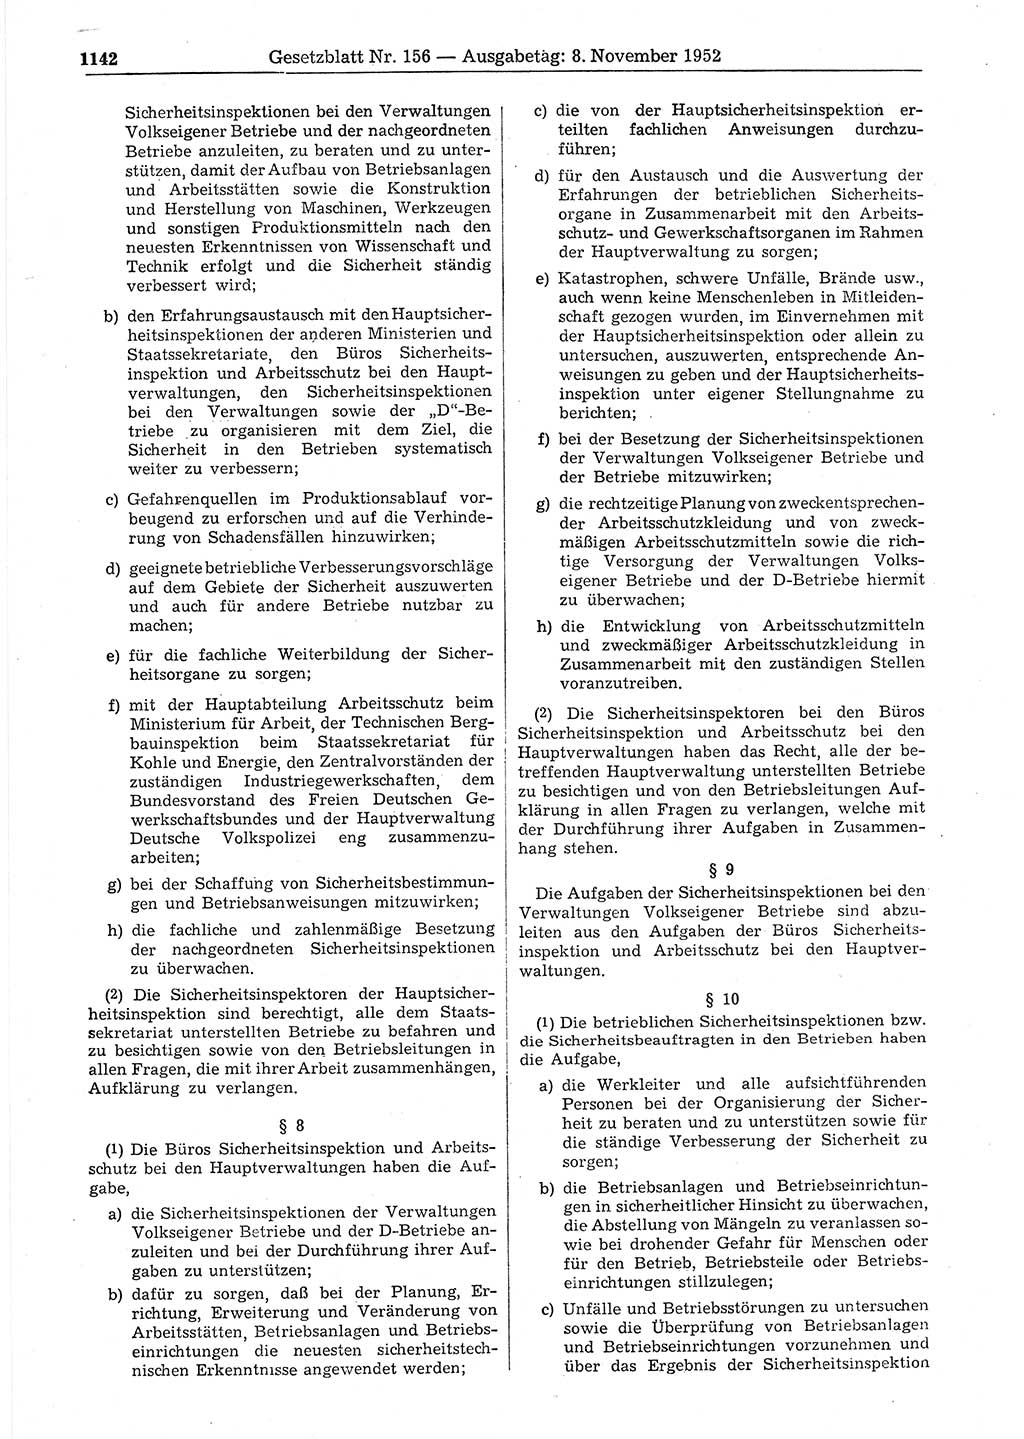 Gesetzblatt (GBl.) der Deutschen Demokratischen Republik (DDR) 1952, Seite 1142 (GBl. DDR 1952, S. 1142)